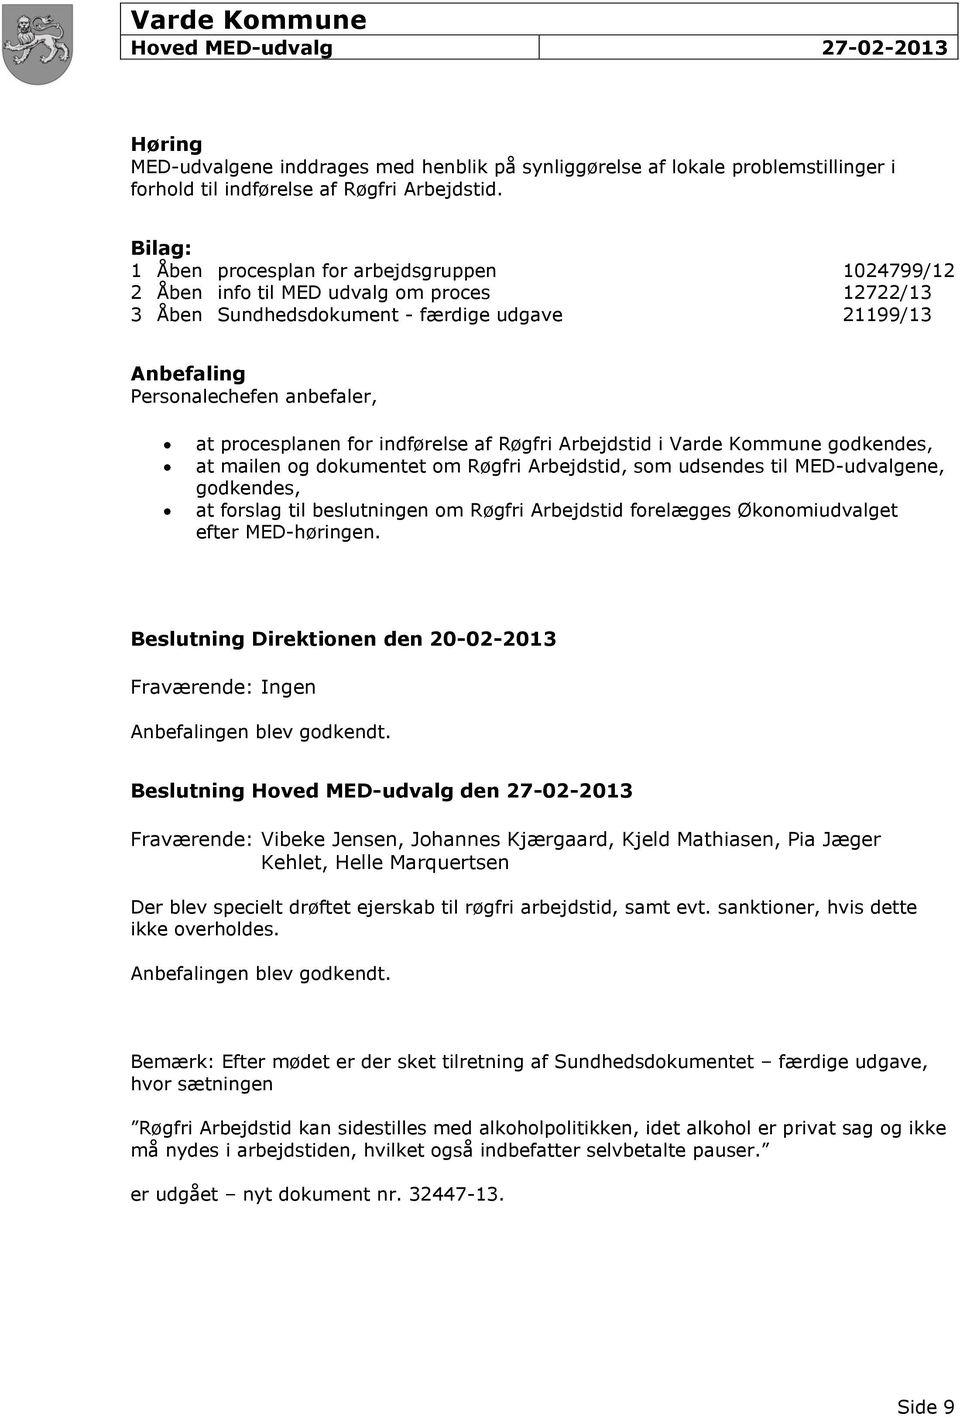 procesplanen for indførelse af Røgfri Arbejdstid i Varde Kommune godkendes, at mailen og dokumentet om Røgfri Arbejdstid, som udsendes til MED-udvalgene, godkendes, at forslag til beslutningen om